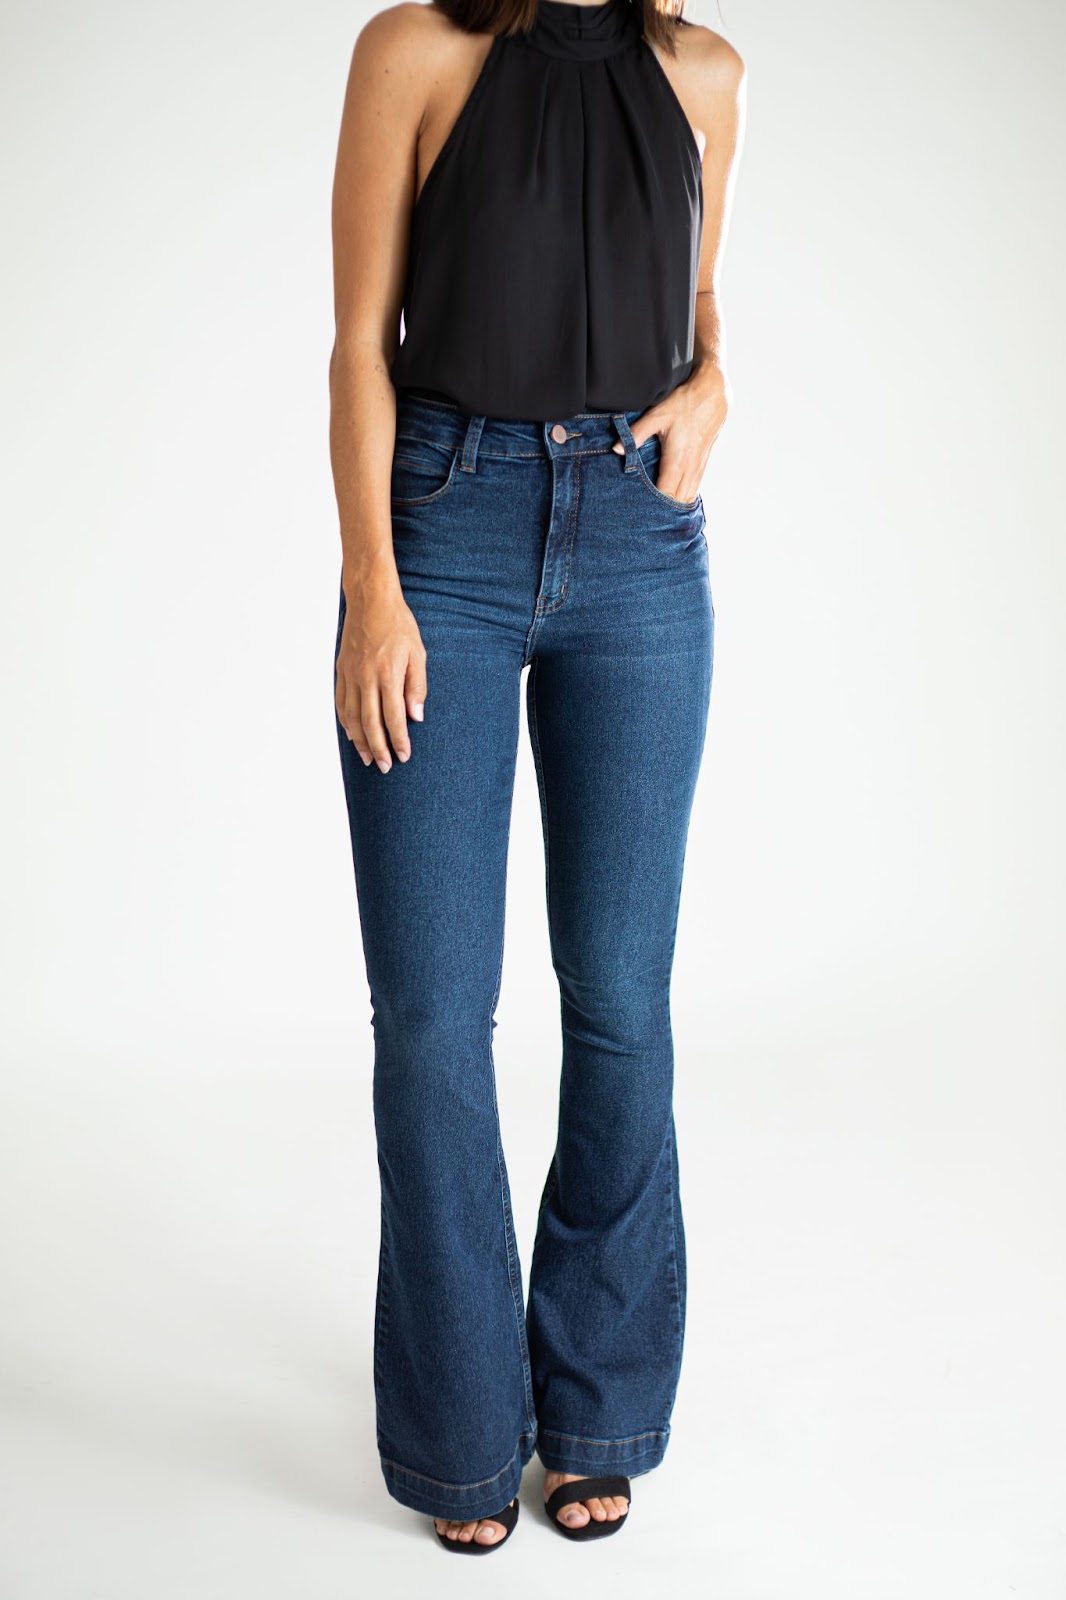 Como montar um look com calça flare? - Dicas e tendências de calça jeans  para mulheres | Blog Santé Denim